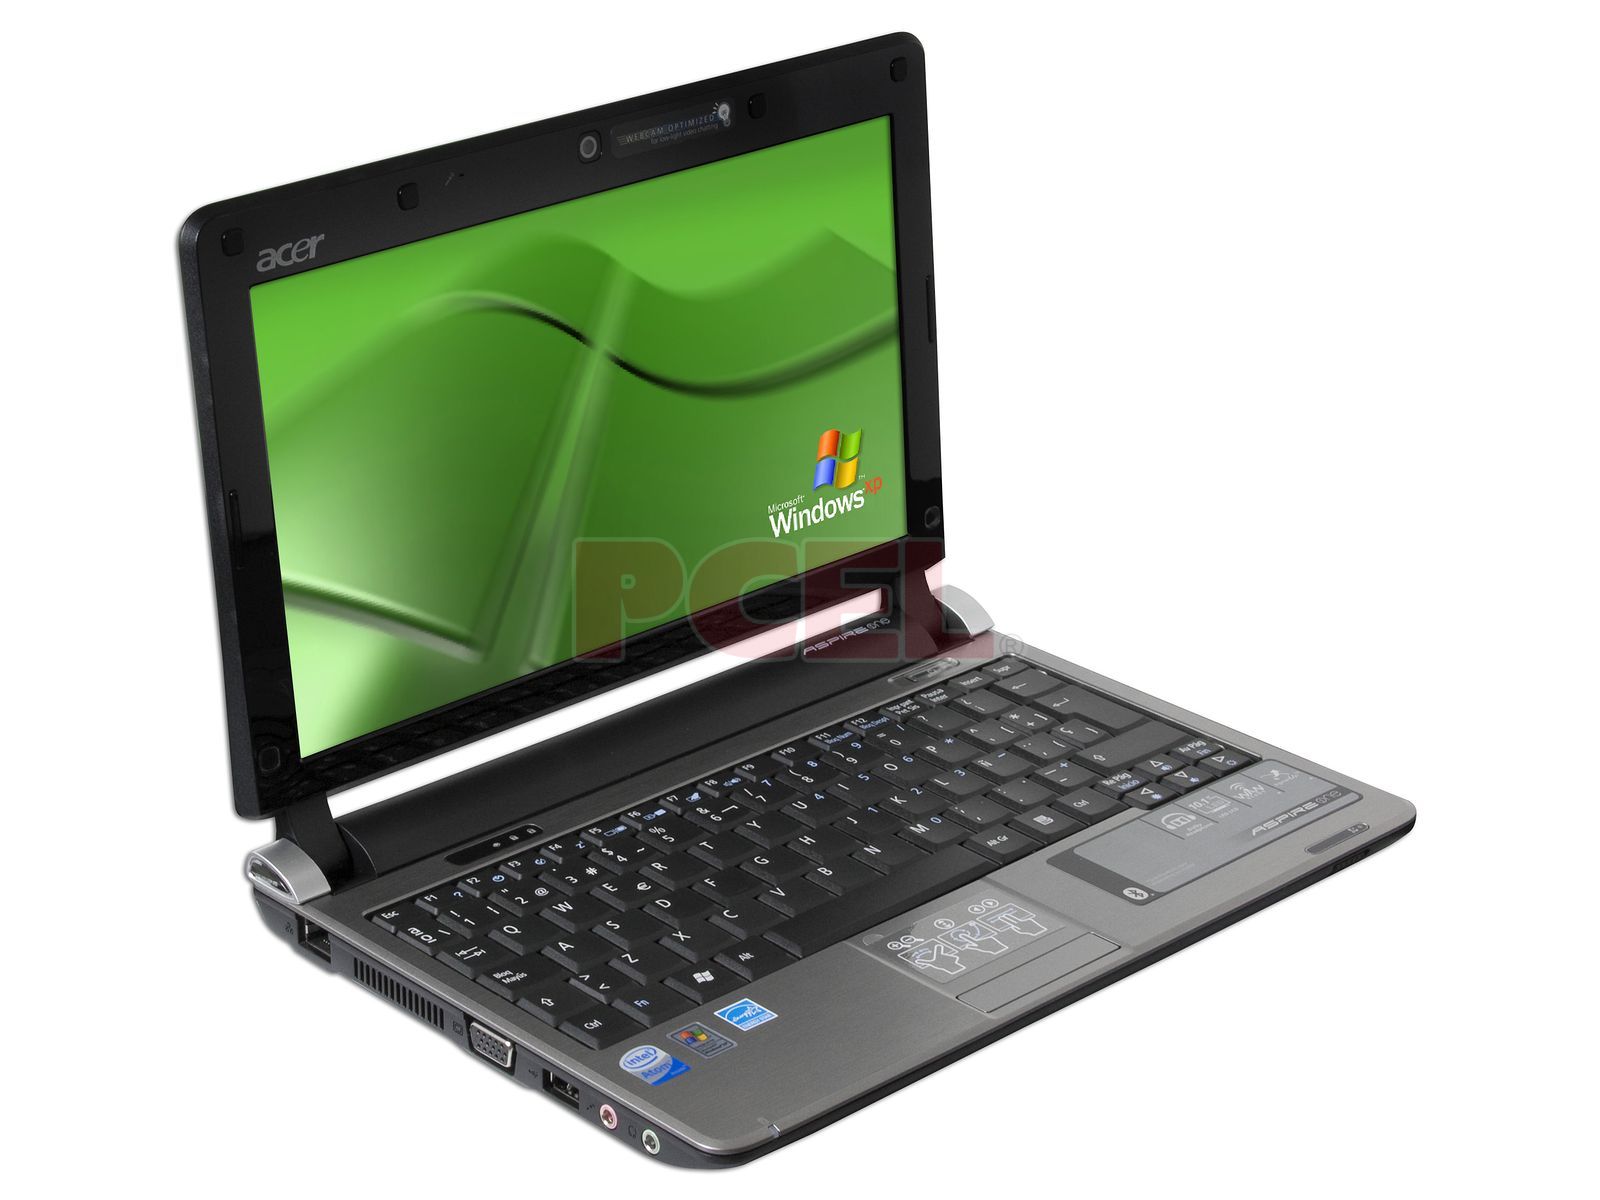 Dominante Cantidad de vergüenza Netbook Acer Aspire One: Procesador Intel Atom N270 (1.60 GHz), Memoria de  1GB DDR II, Almacenamiento Interno 160GB, Pantalla de 10.1", Red 802.11b/g,  Ethernet, Windows XP Home. Color Negra